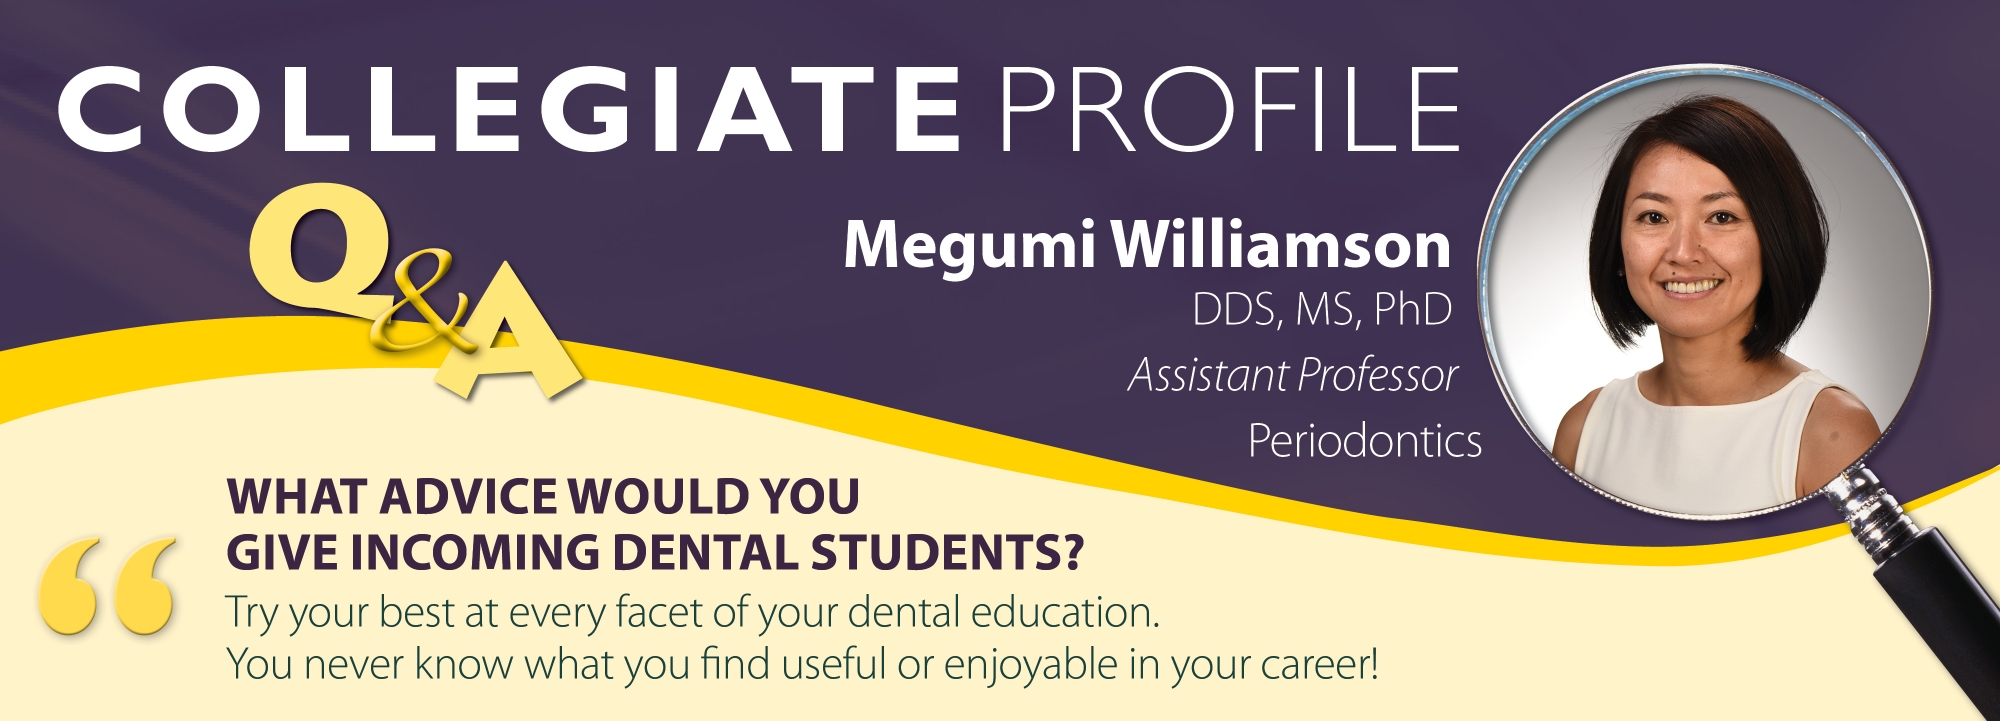 collegiate profile Megumi Williamson